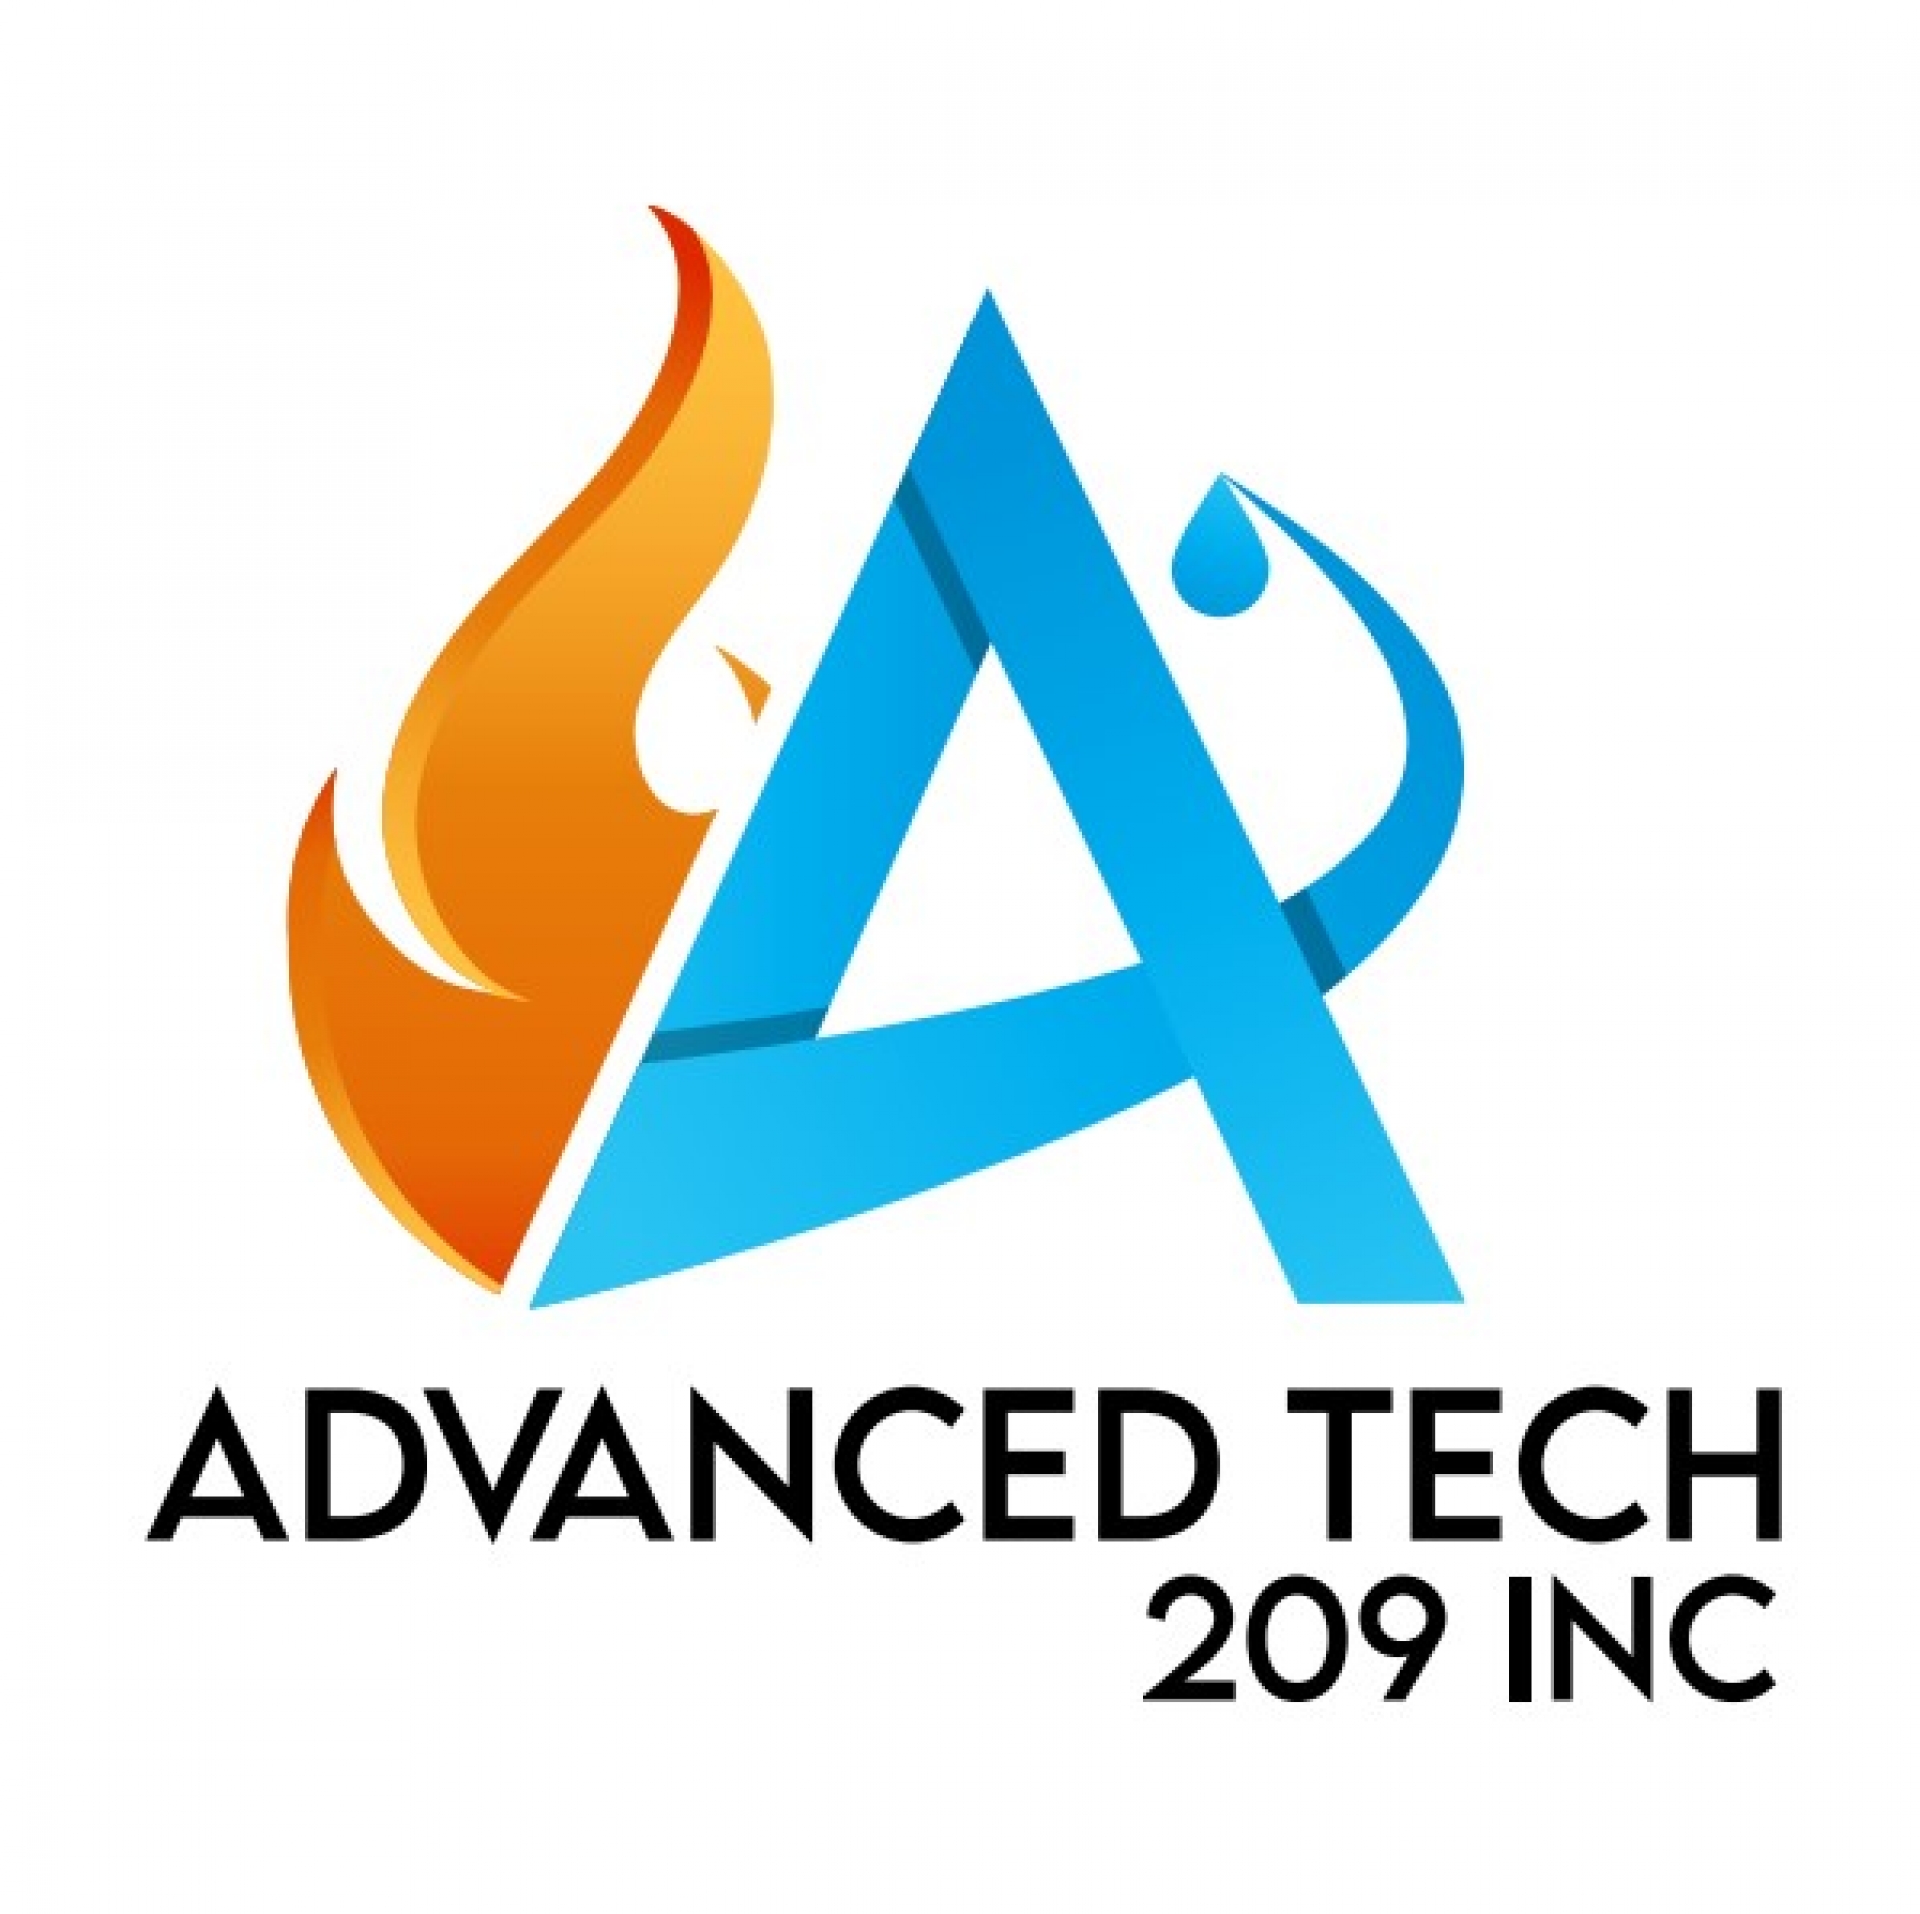 Advanced TECH 209 Inc logo